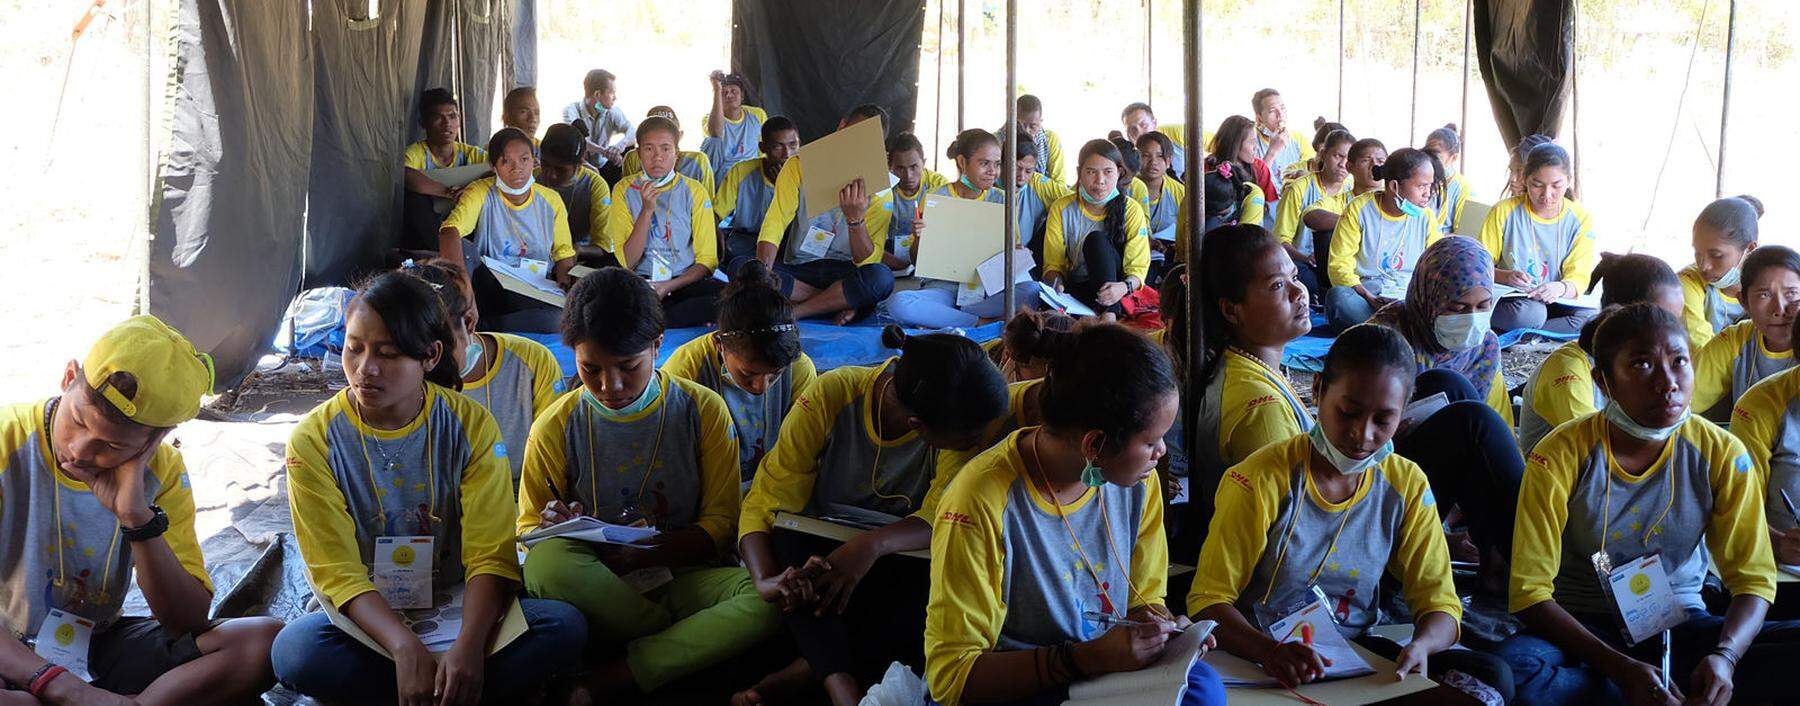 Vorbereitung aufs Berufsleben: Junge Indonesier aus dem SOS Kinderdorf der Insel Flores werden  von DHL-Mitarbeitern trainiert.